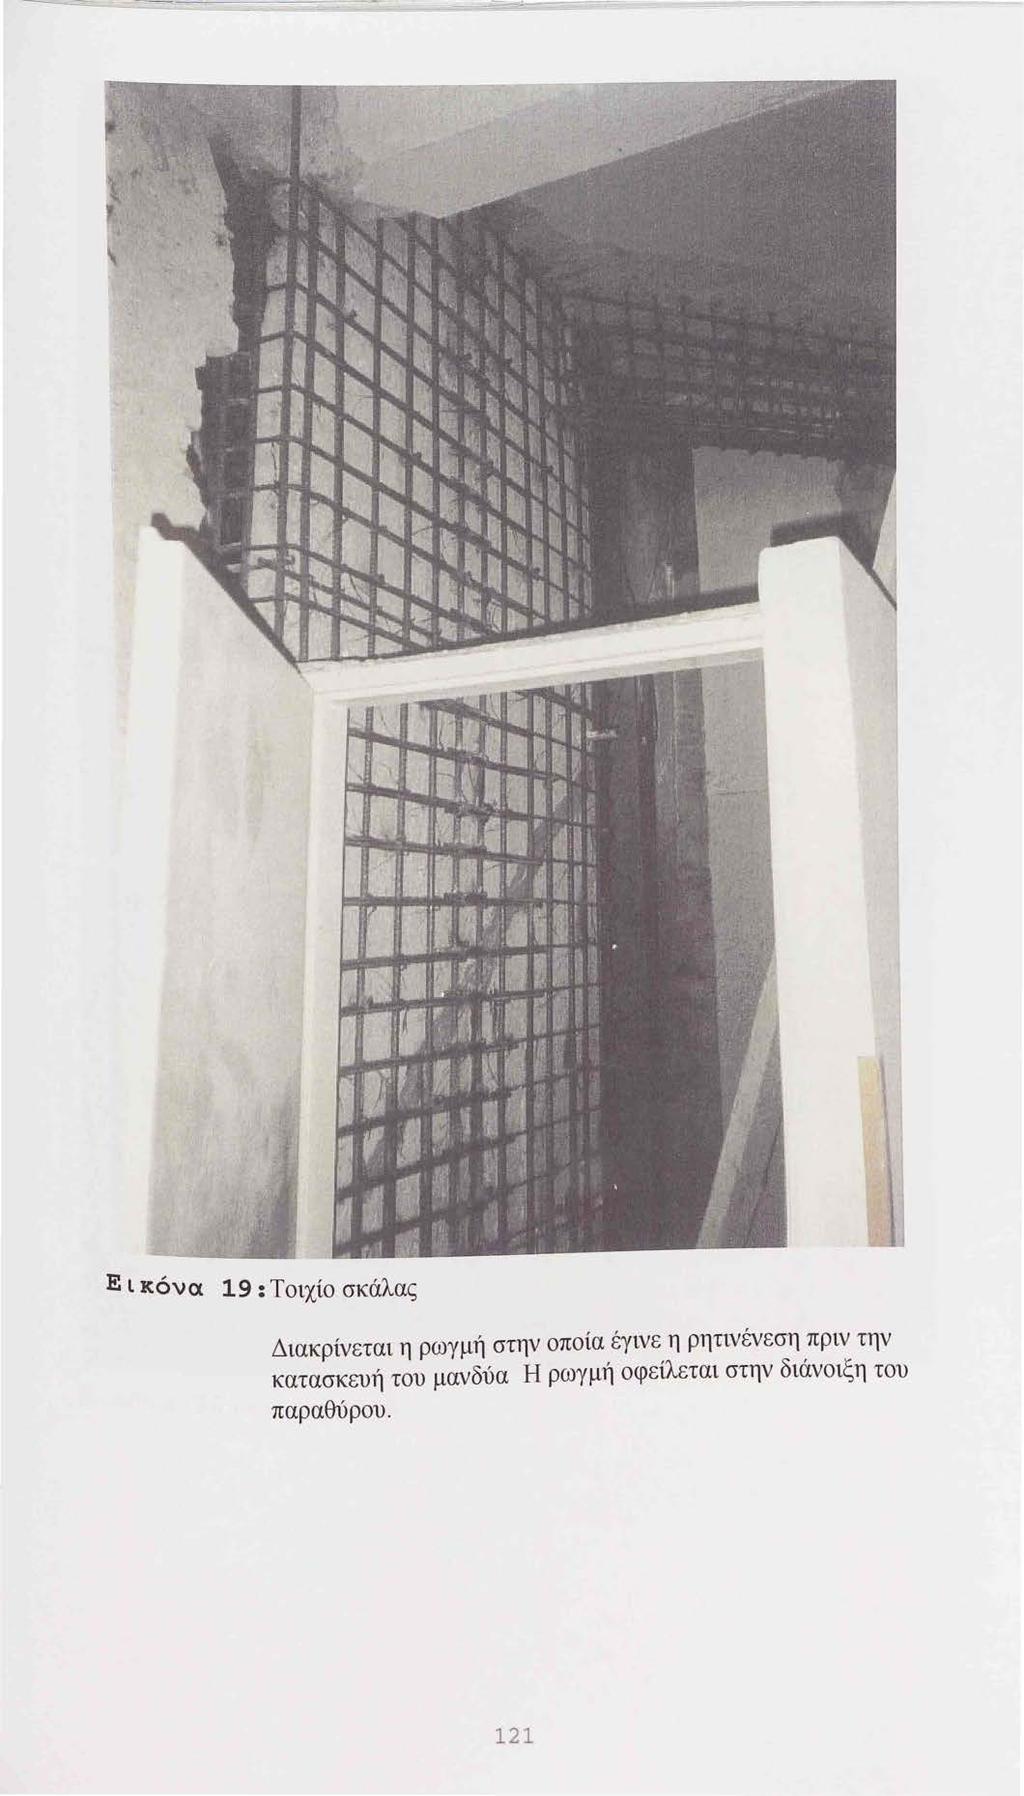 Εικόνα 19: Τοιχίο σκάλας Διακρίνεται η ρωγμή στην οποία έγινε η ρητινένεση